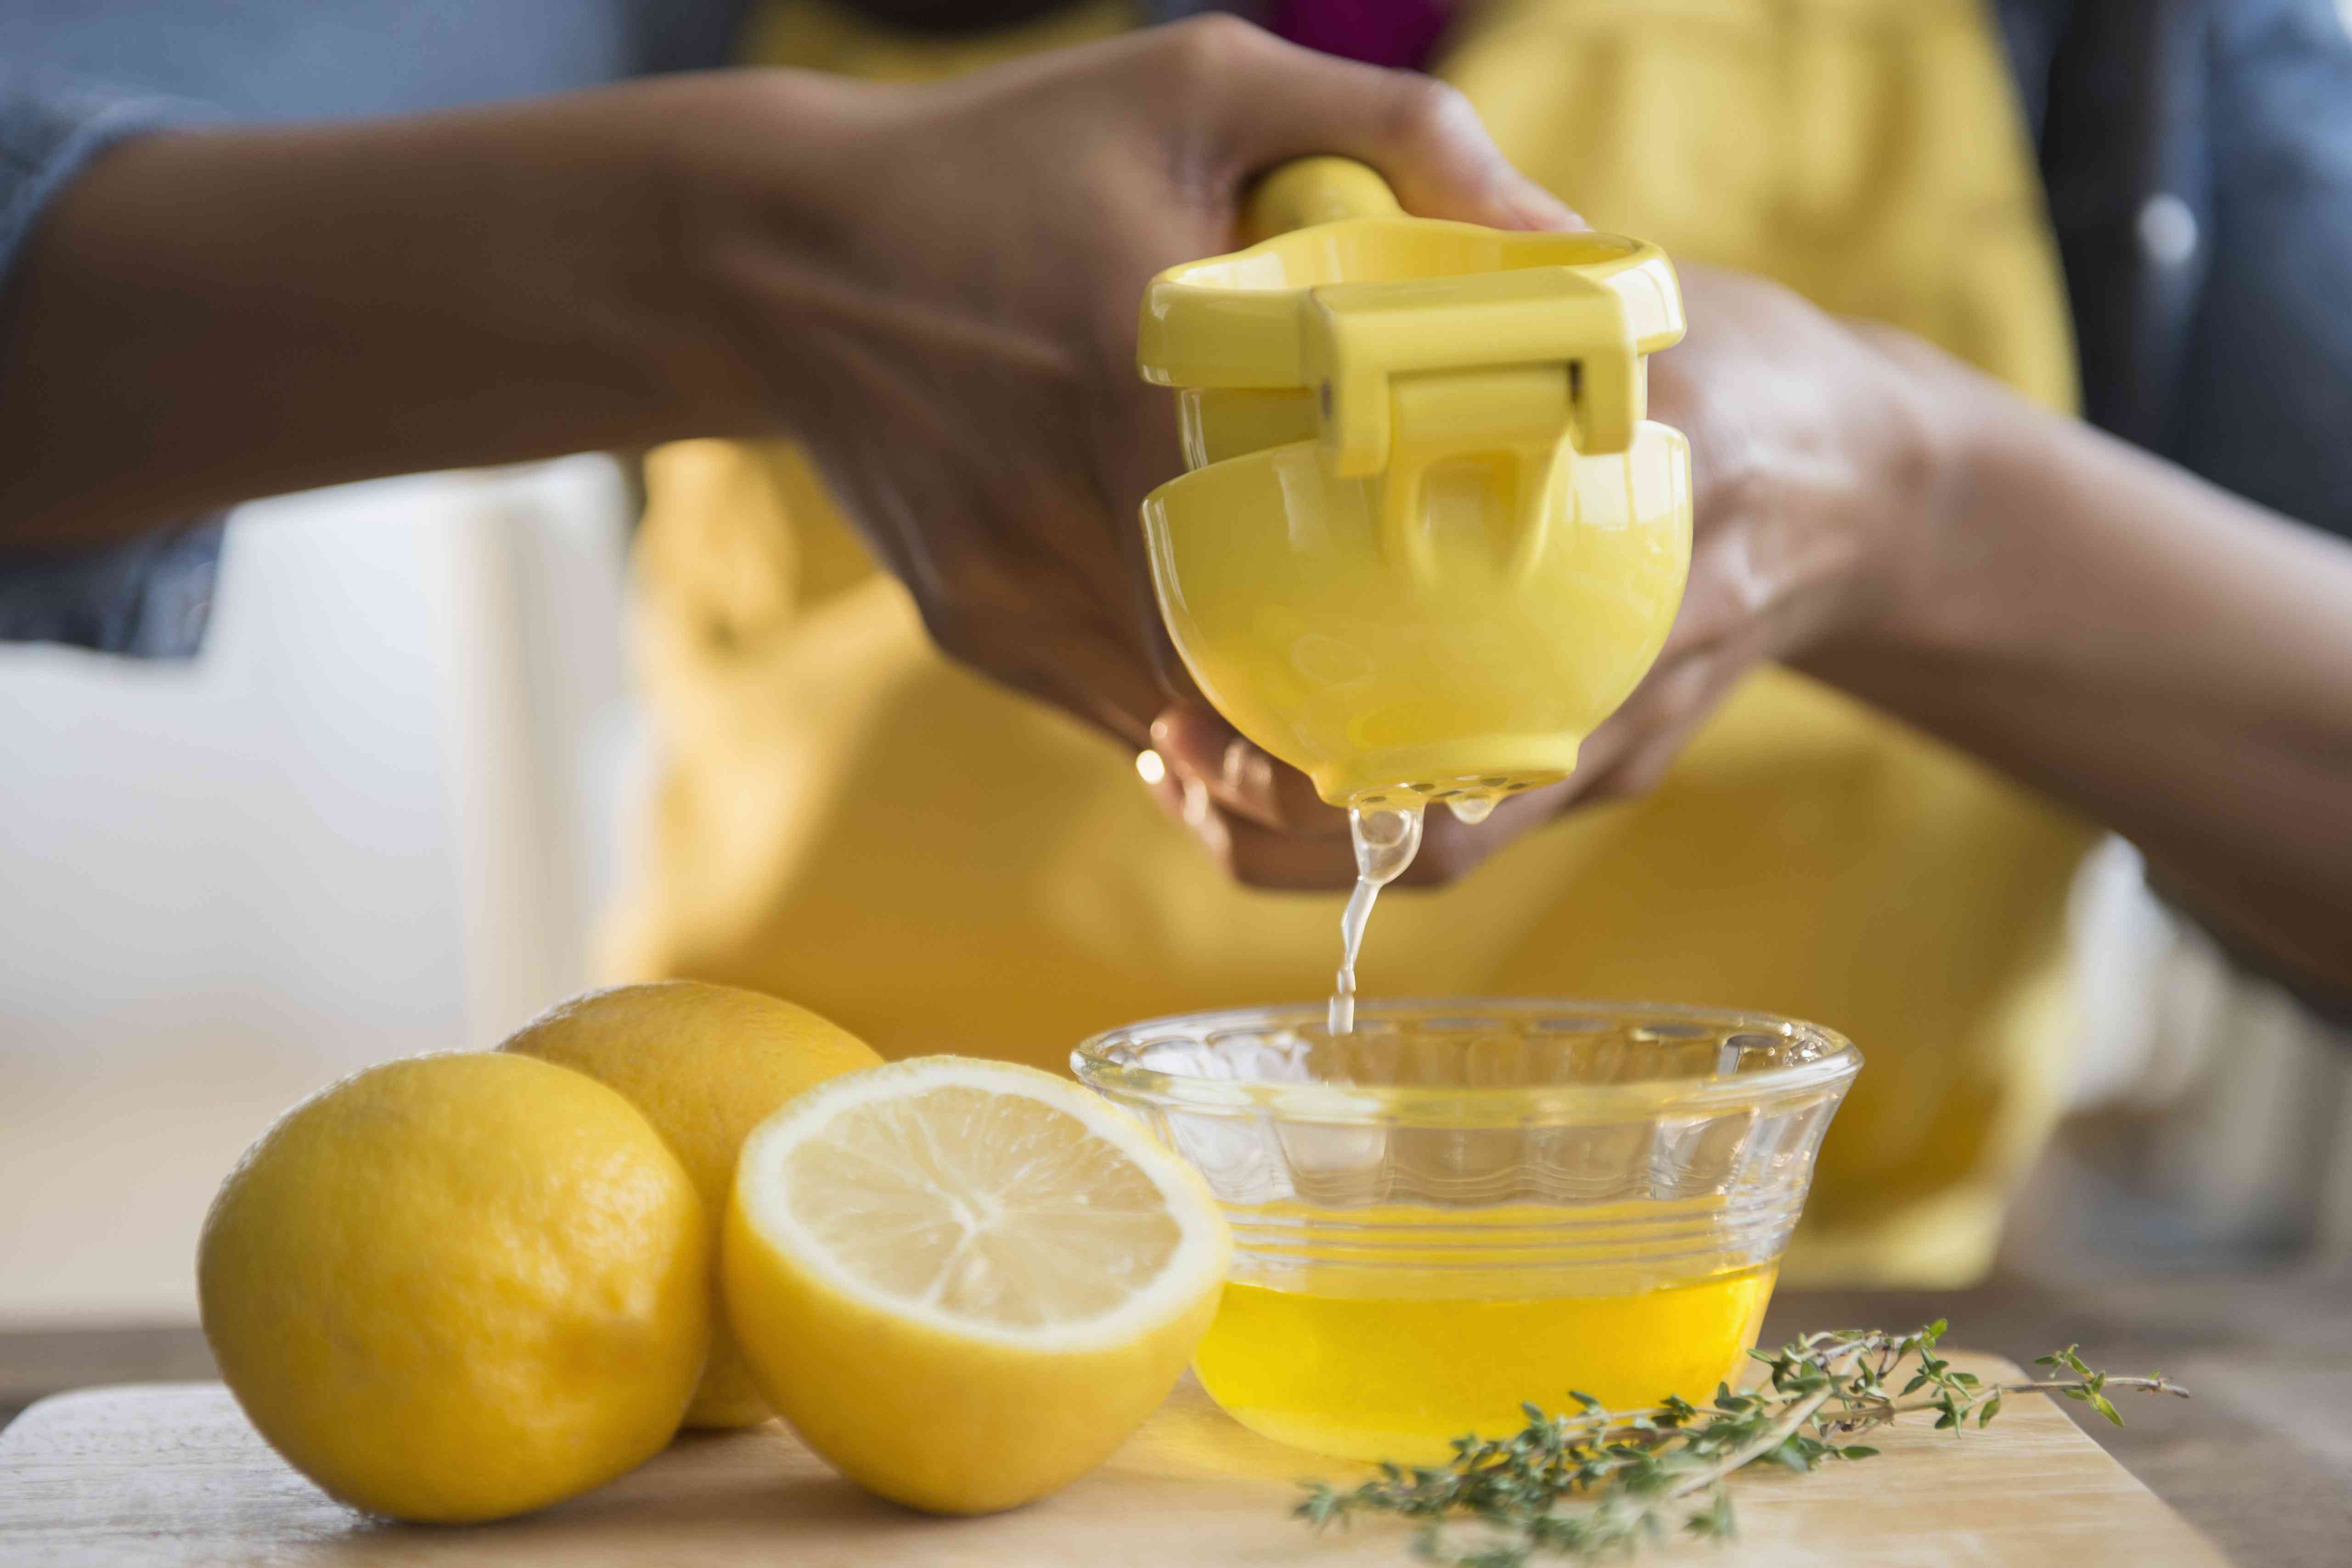 有人在一个小碗上使用金属柠檬汁挤压。更多的柠檬坐在旁边的工作台上，靠近百里香小树枝“width=